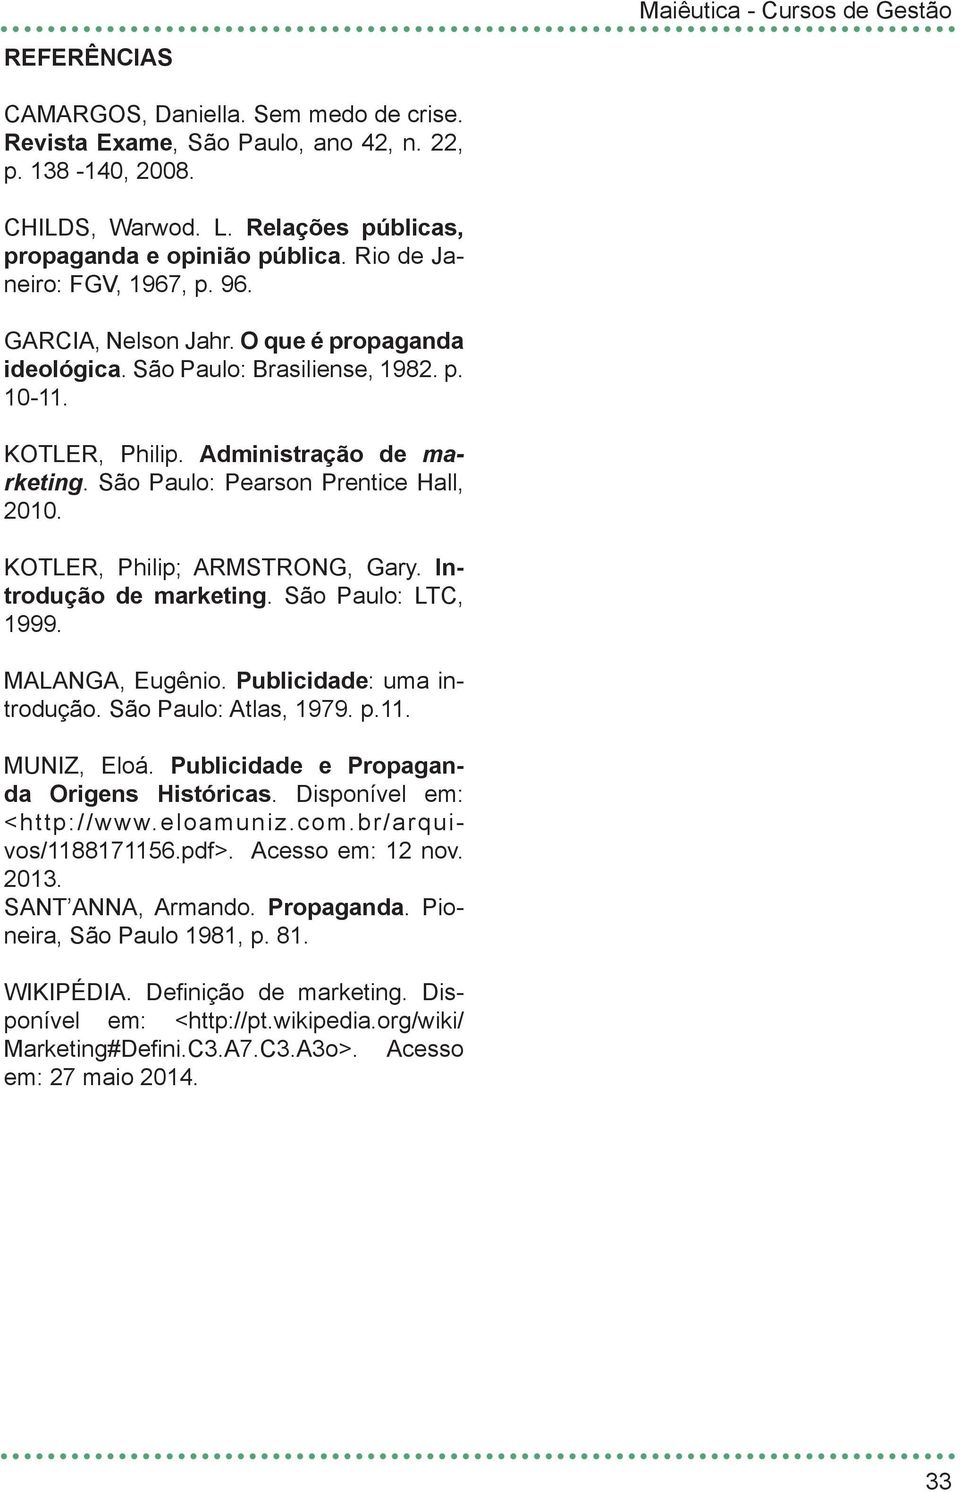 São Paulo: Pearson Prentice Hall, 2010. KOTLER, Philip; ARMSTRONG, Gary. Introdução de marketing. São Paulo: LTC, 1999. MALANGA, Eugênio. Publicidade: uma introdução. São Paulo: Atlas, 1979. p.11.